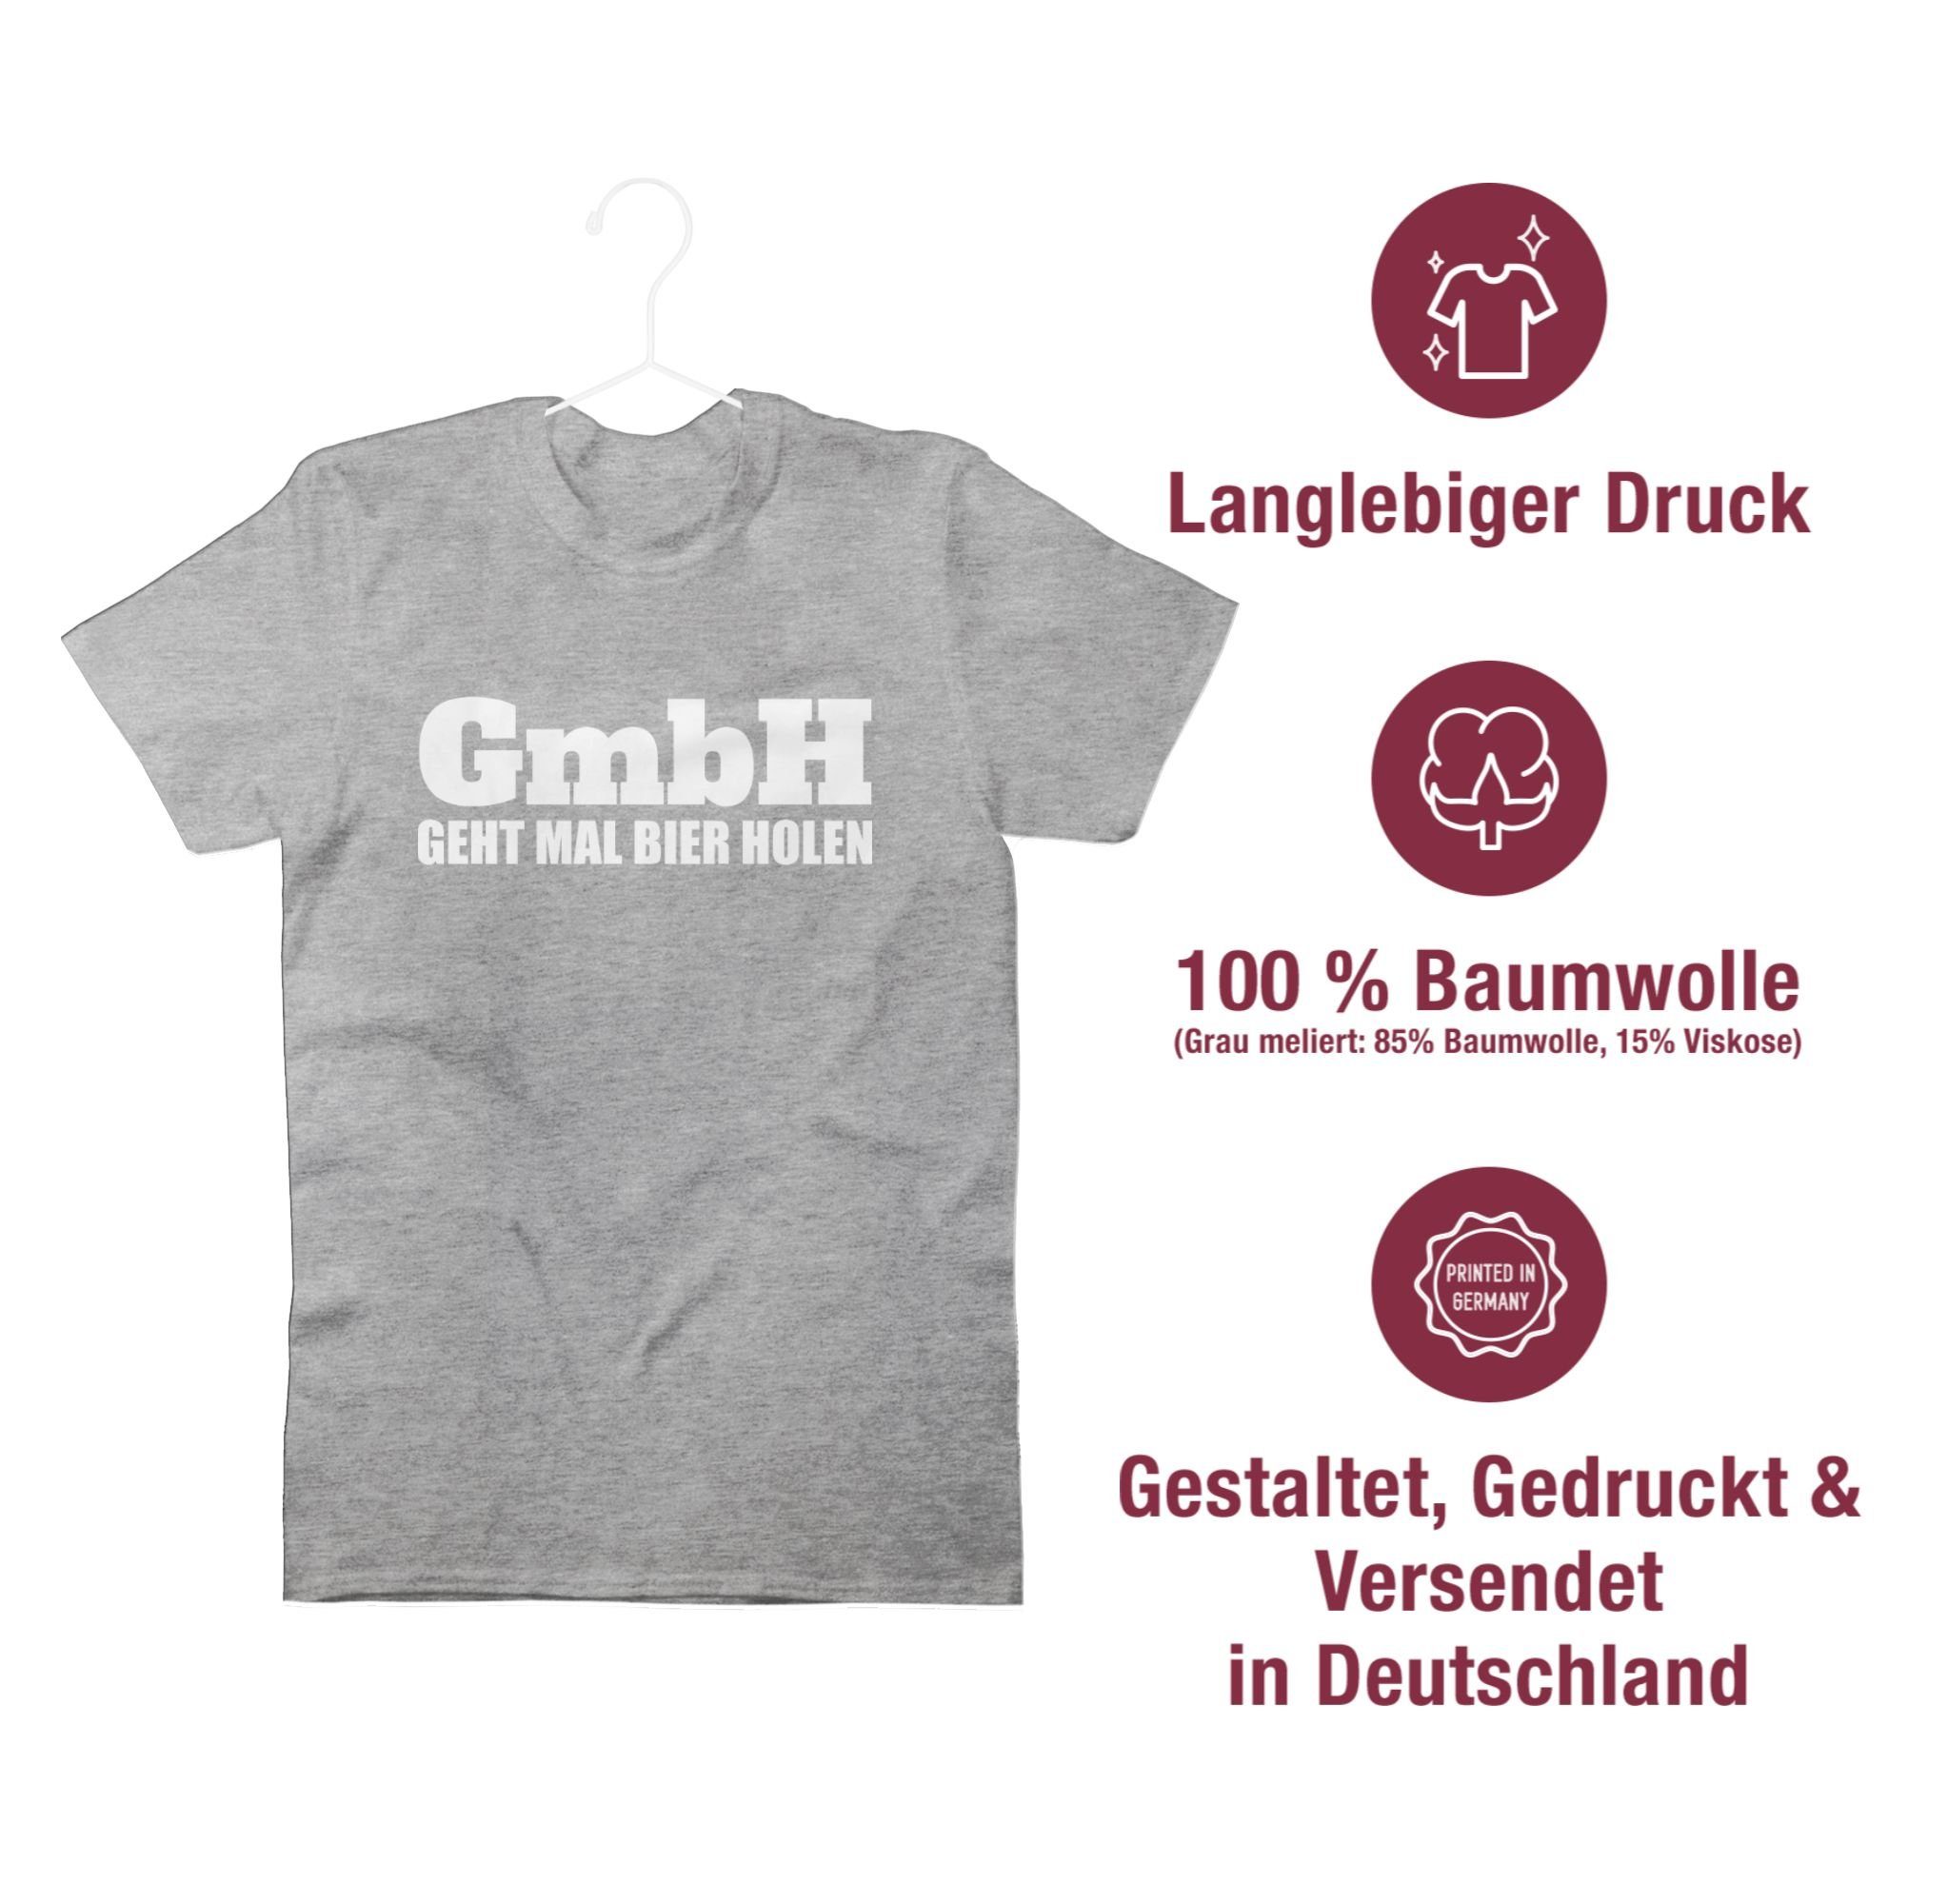 Shirtracer T-Shirt - Bier Geht mit GmbH 3 Sprüche Statement holen Grau meliert mal Spruch